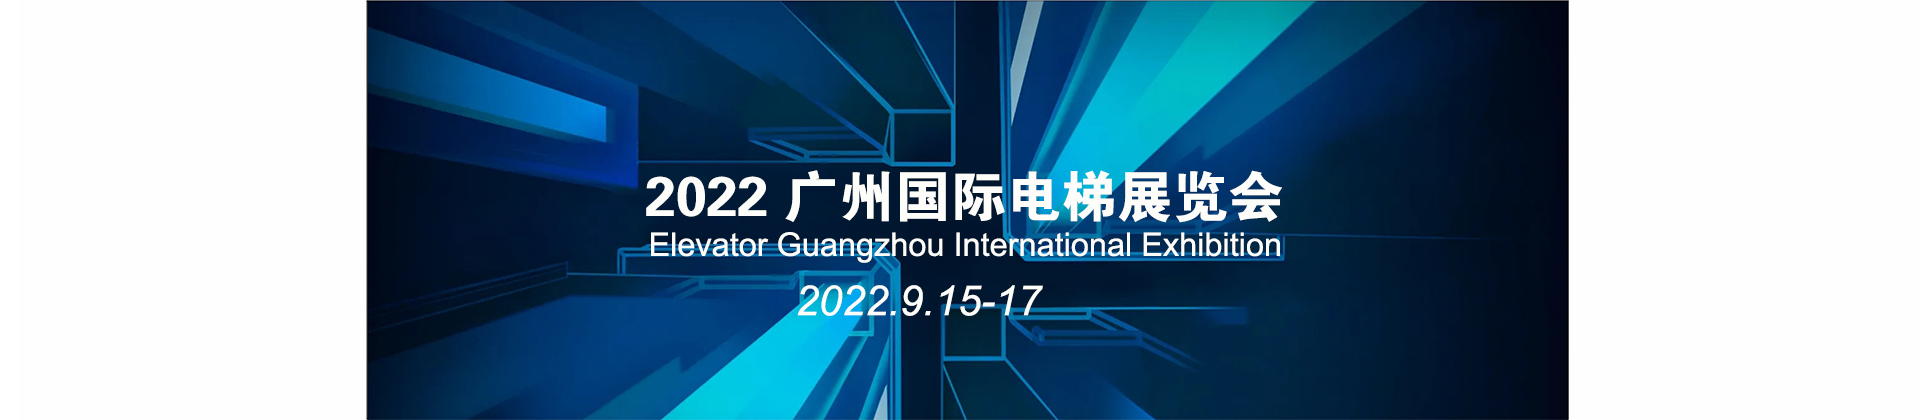 2022廣州國際電梯展覽會